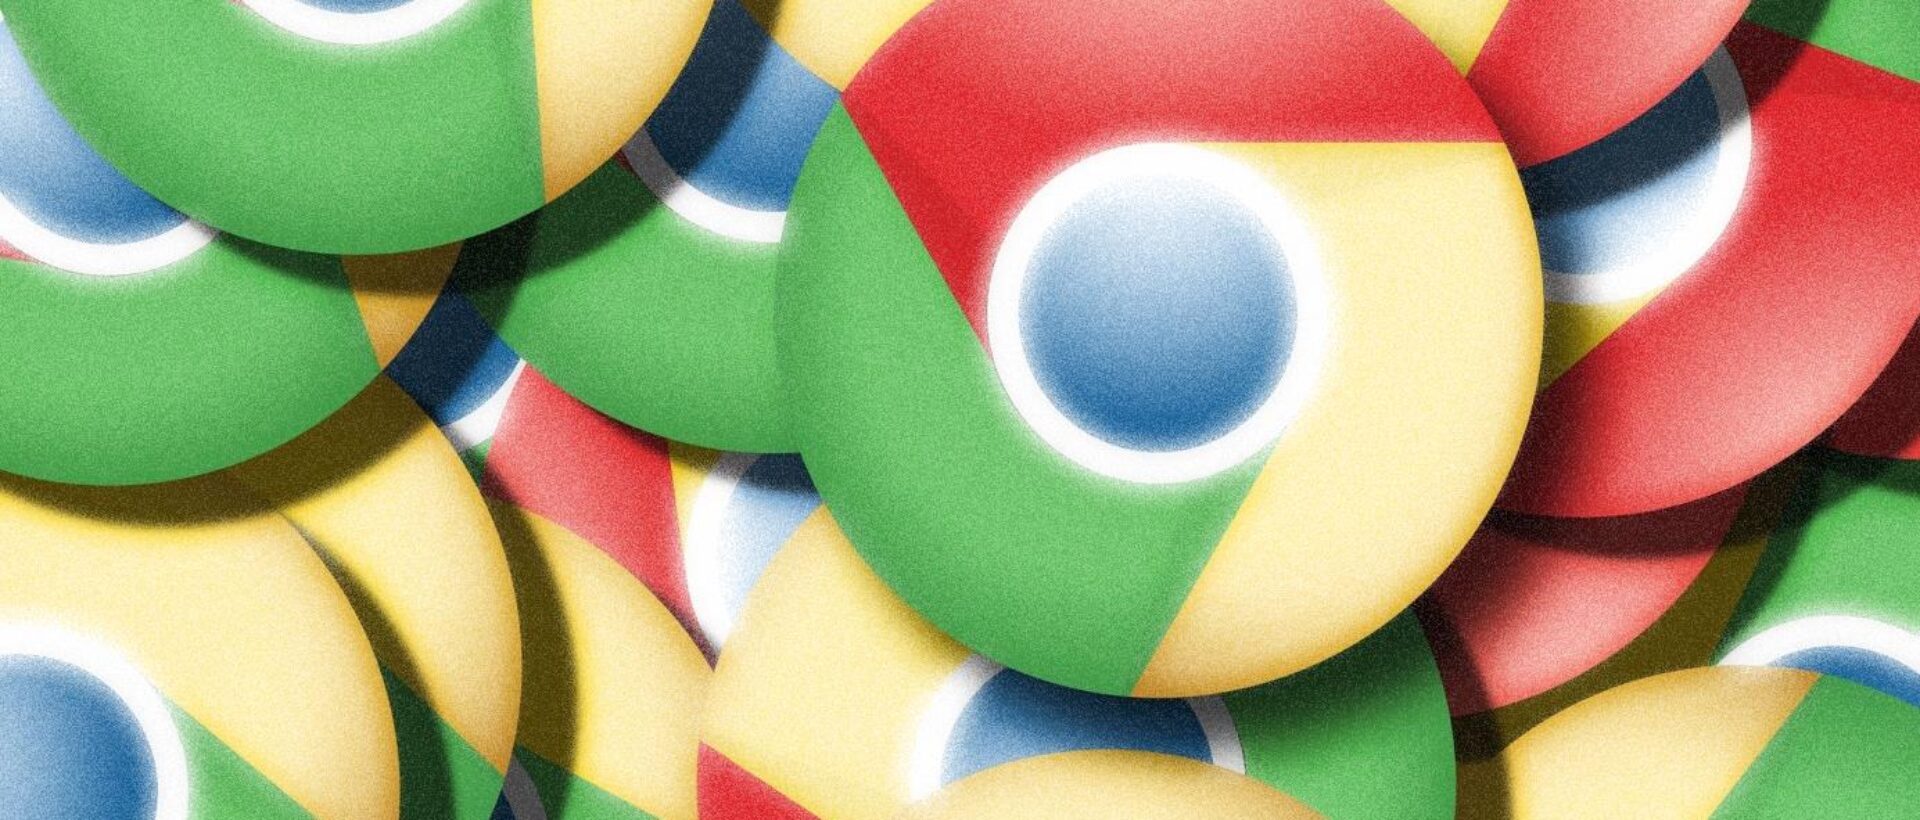 Der neue Google Chrome Ad Blocker